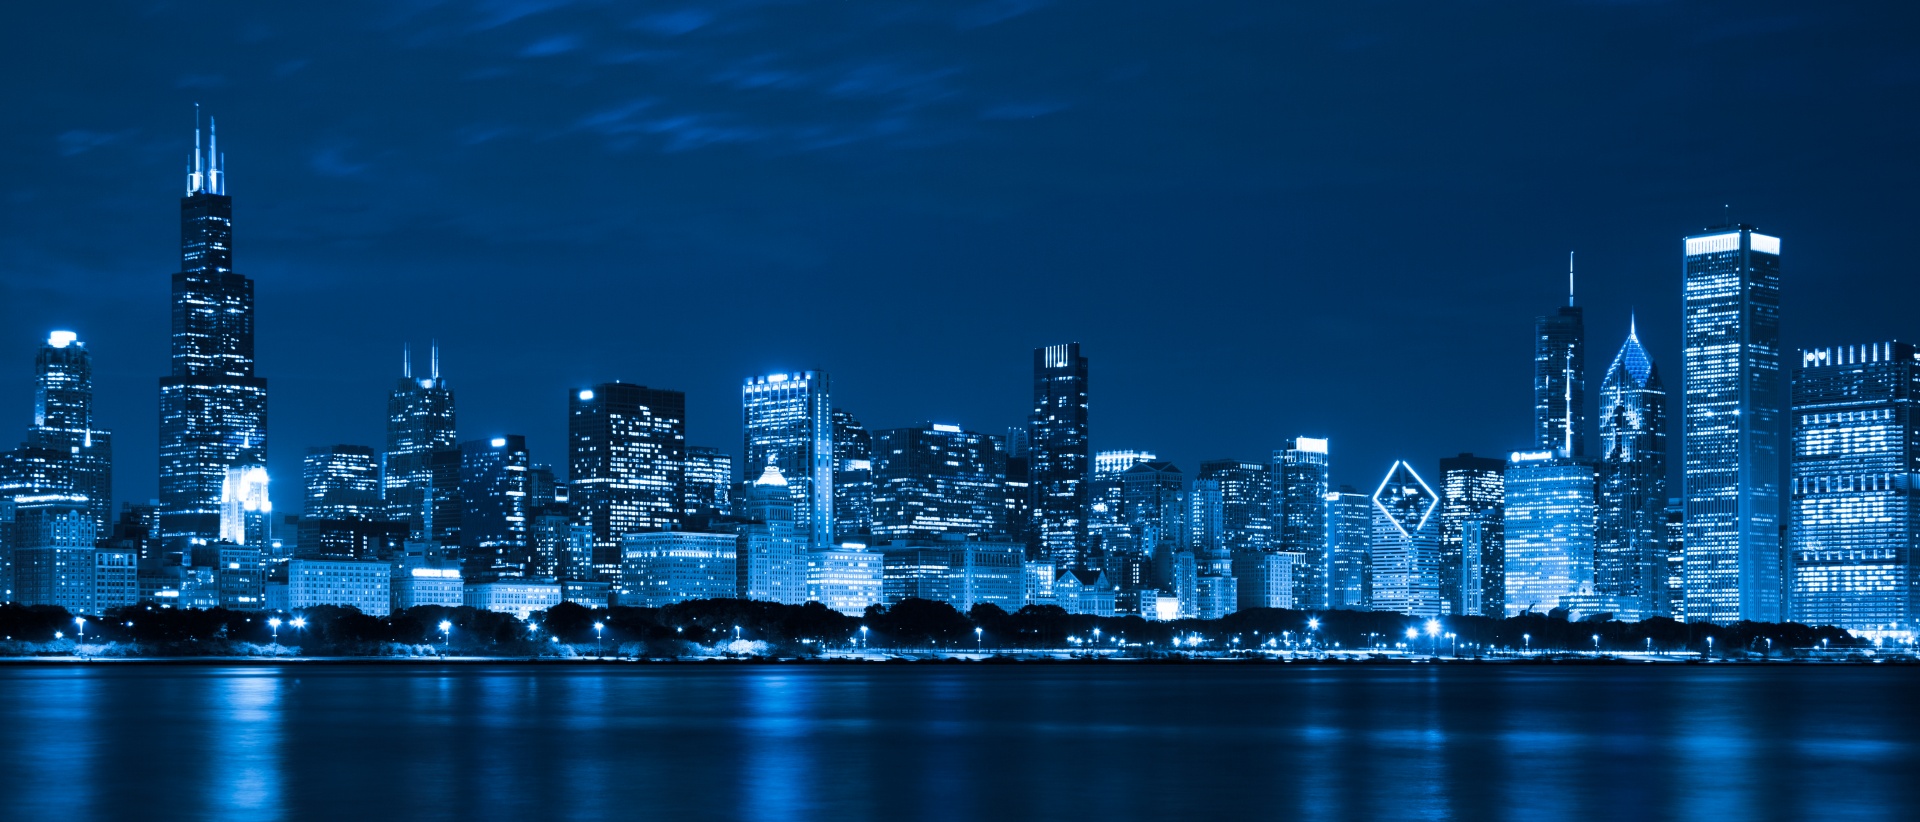 De horizon van Chicago bij nacht